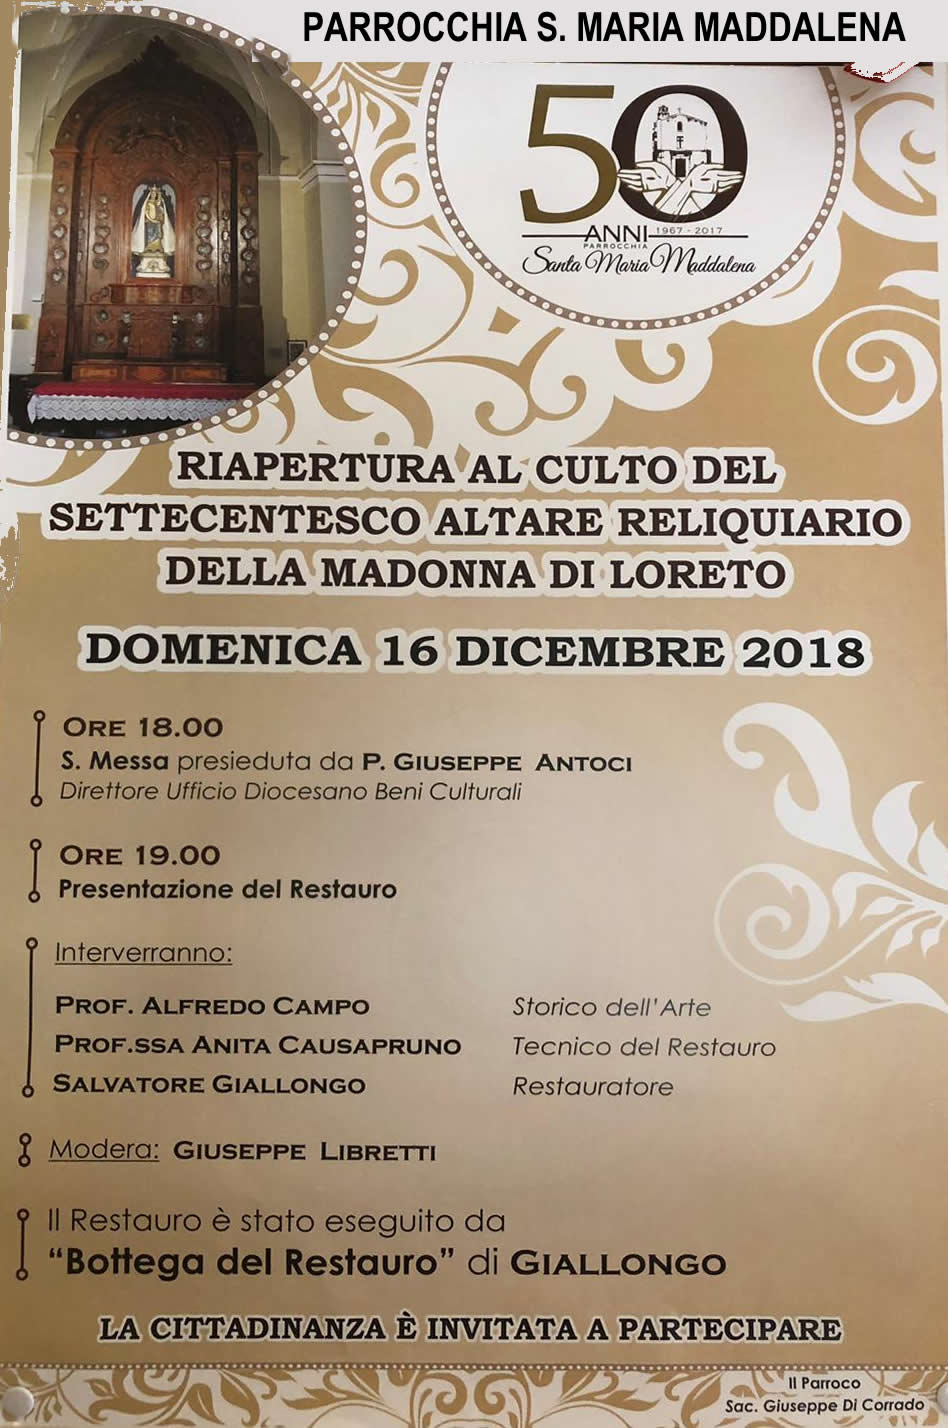 16 Dicembre – Riapertura al culto dell’altare reliquiario della Madonna di Loreto